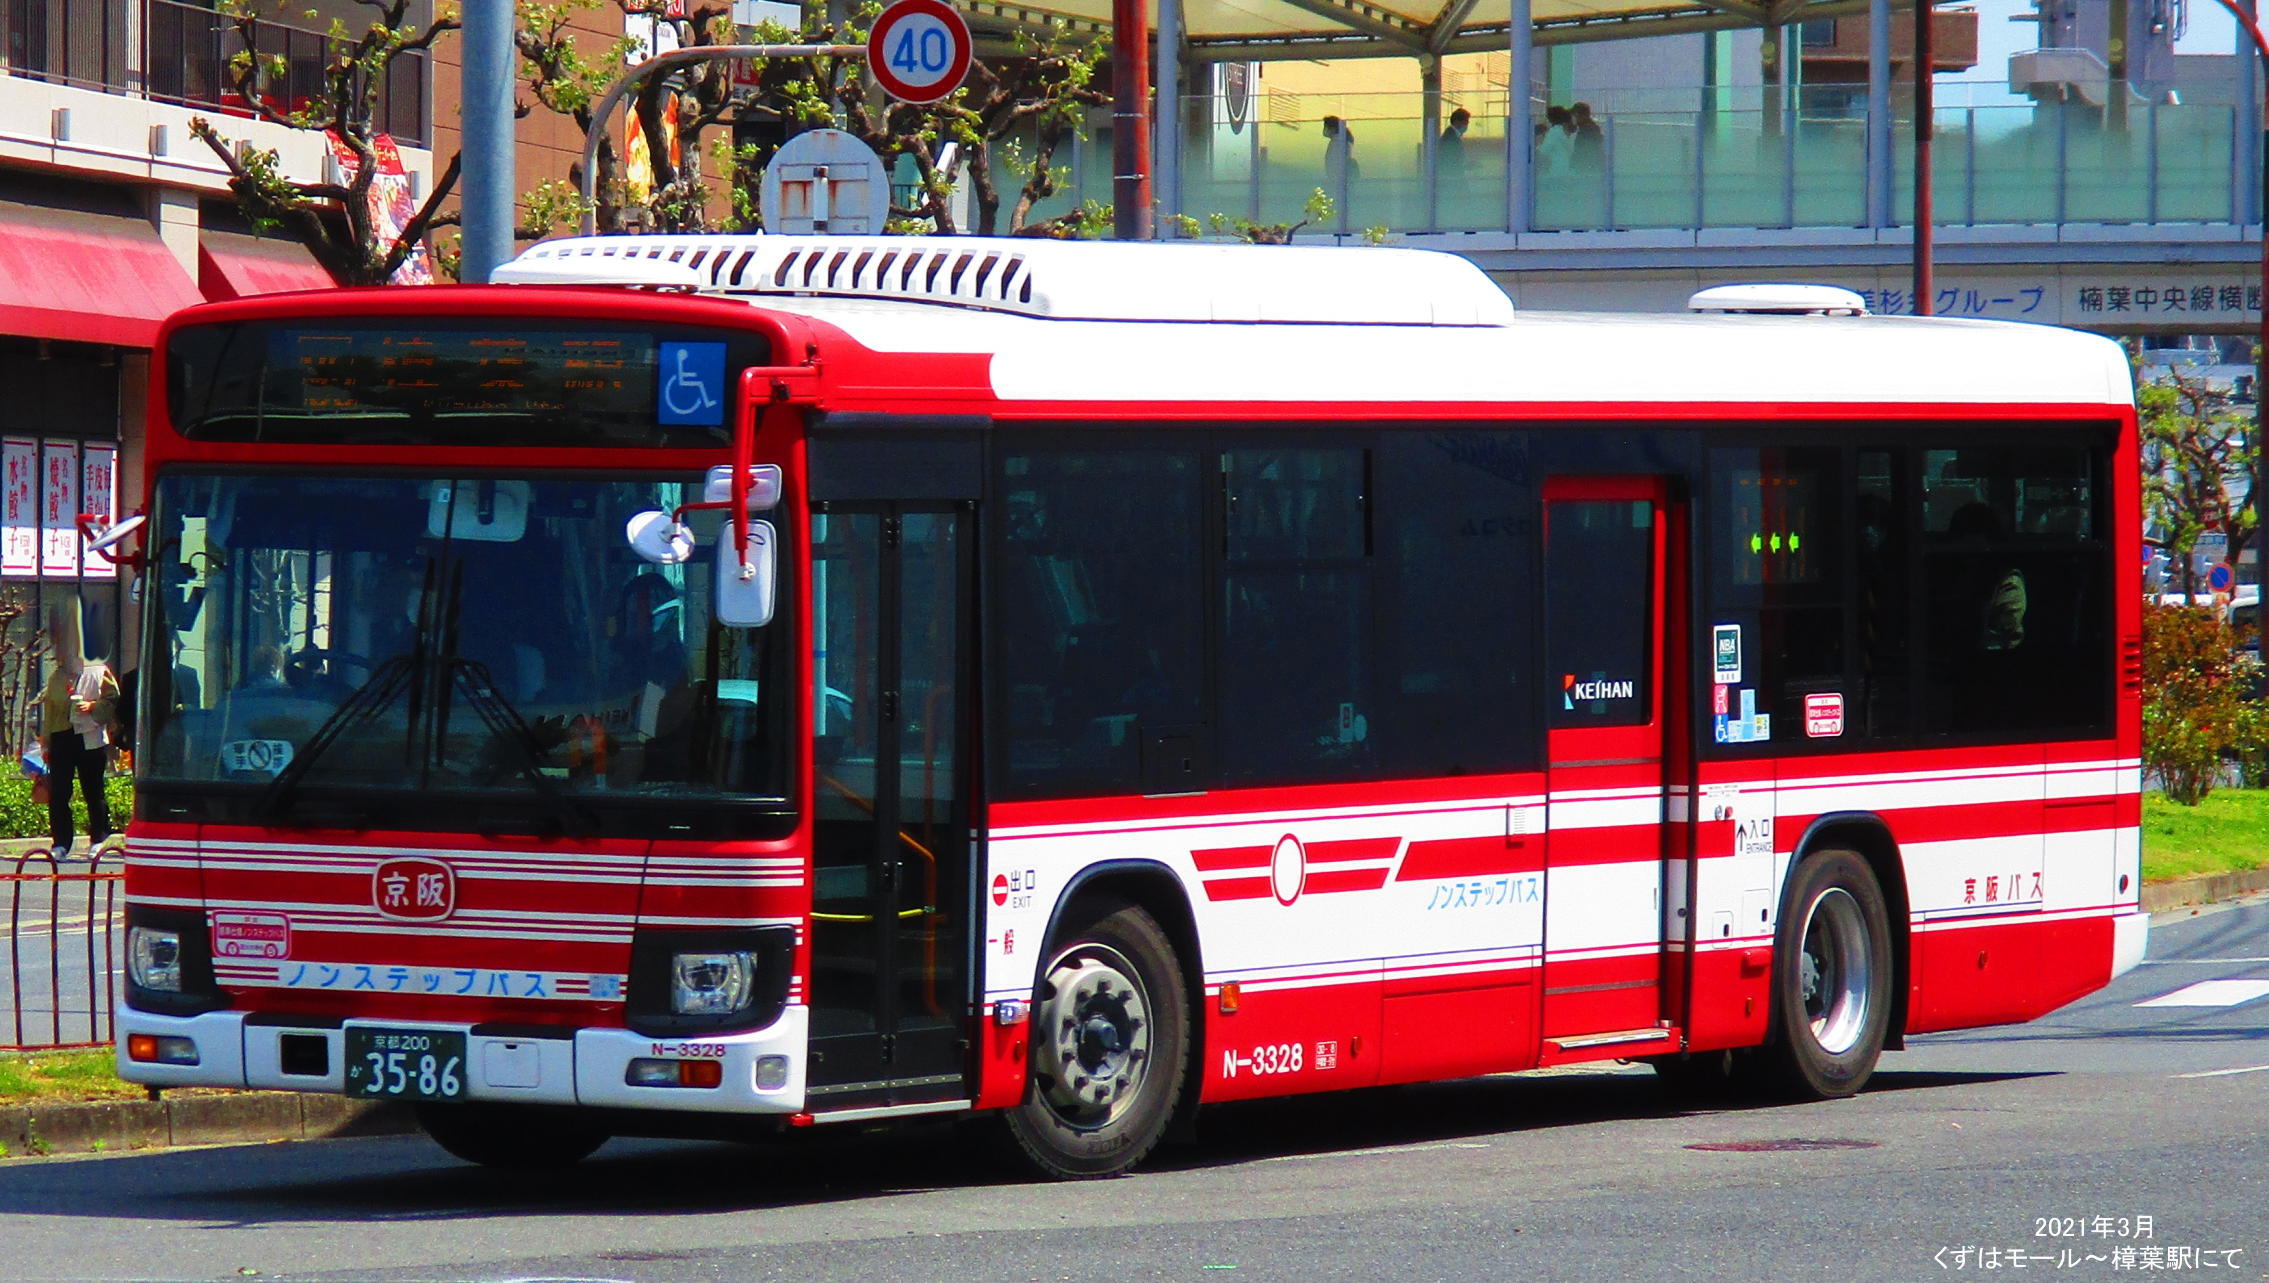 品質満点 京都京阪バス 奈良交通バス 近鉄バス 南海バス ミニカー 